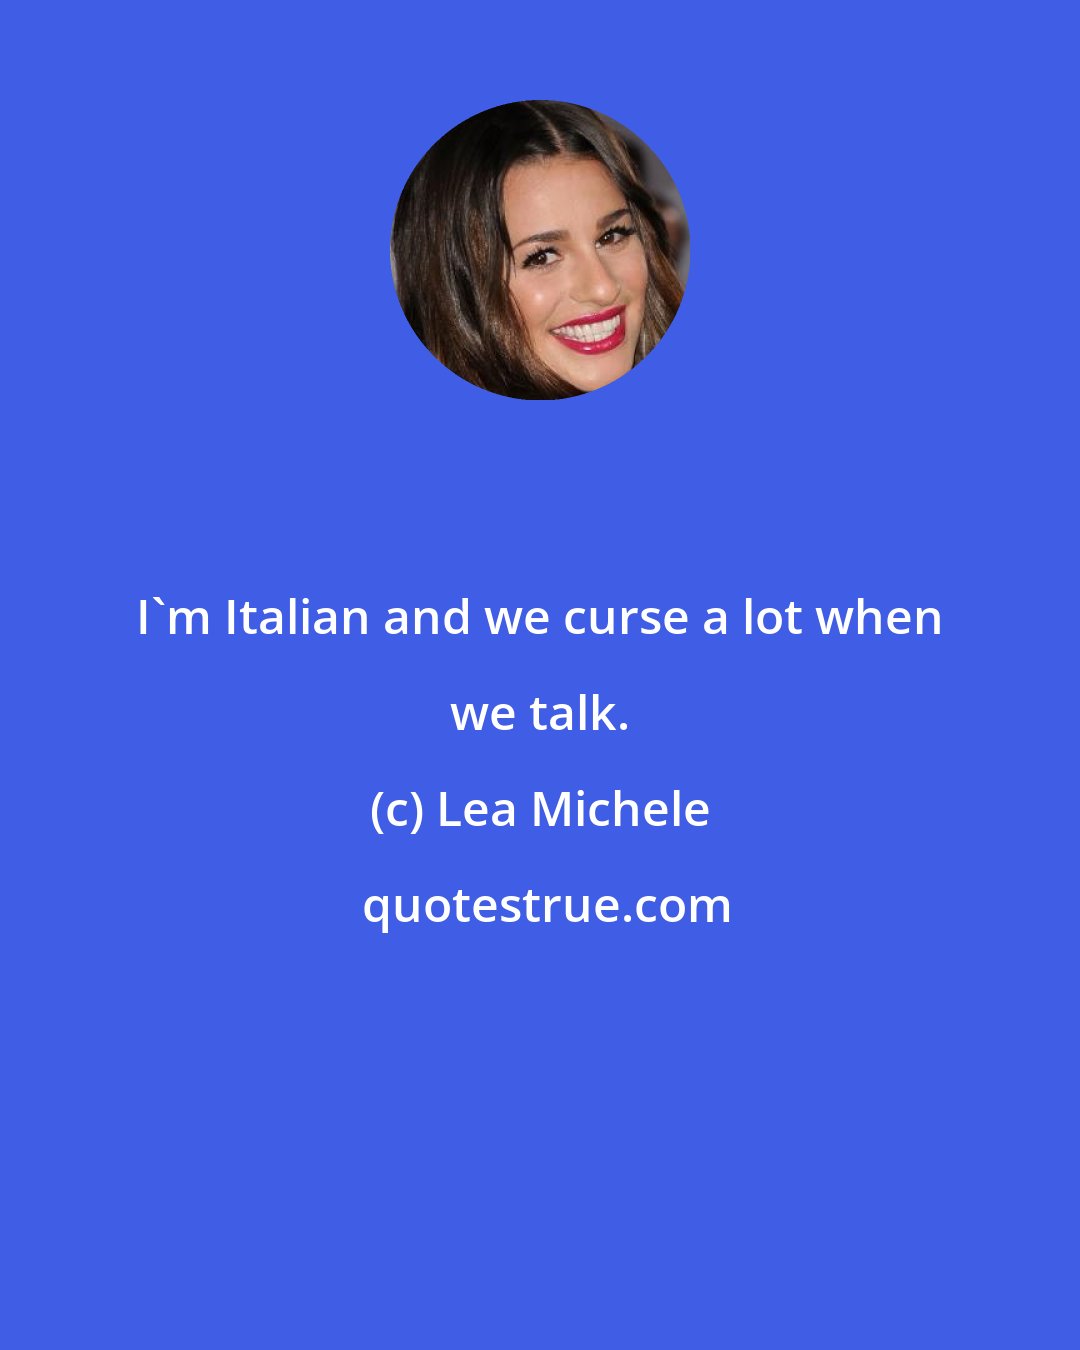 Lea Michele: I'm Italian and we curse a lot when we talk.